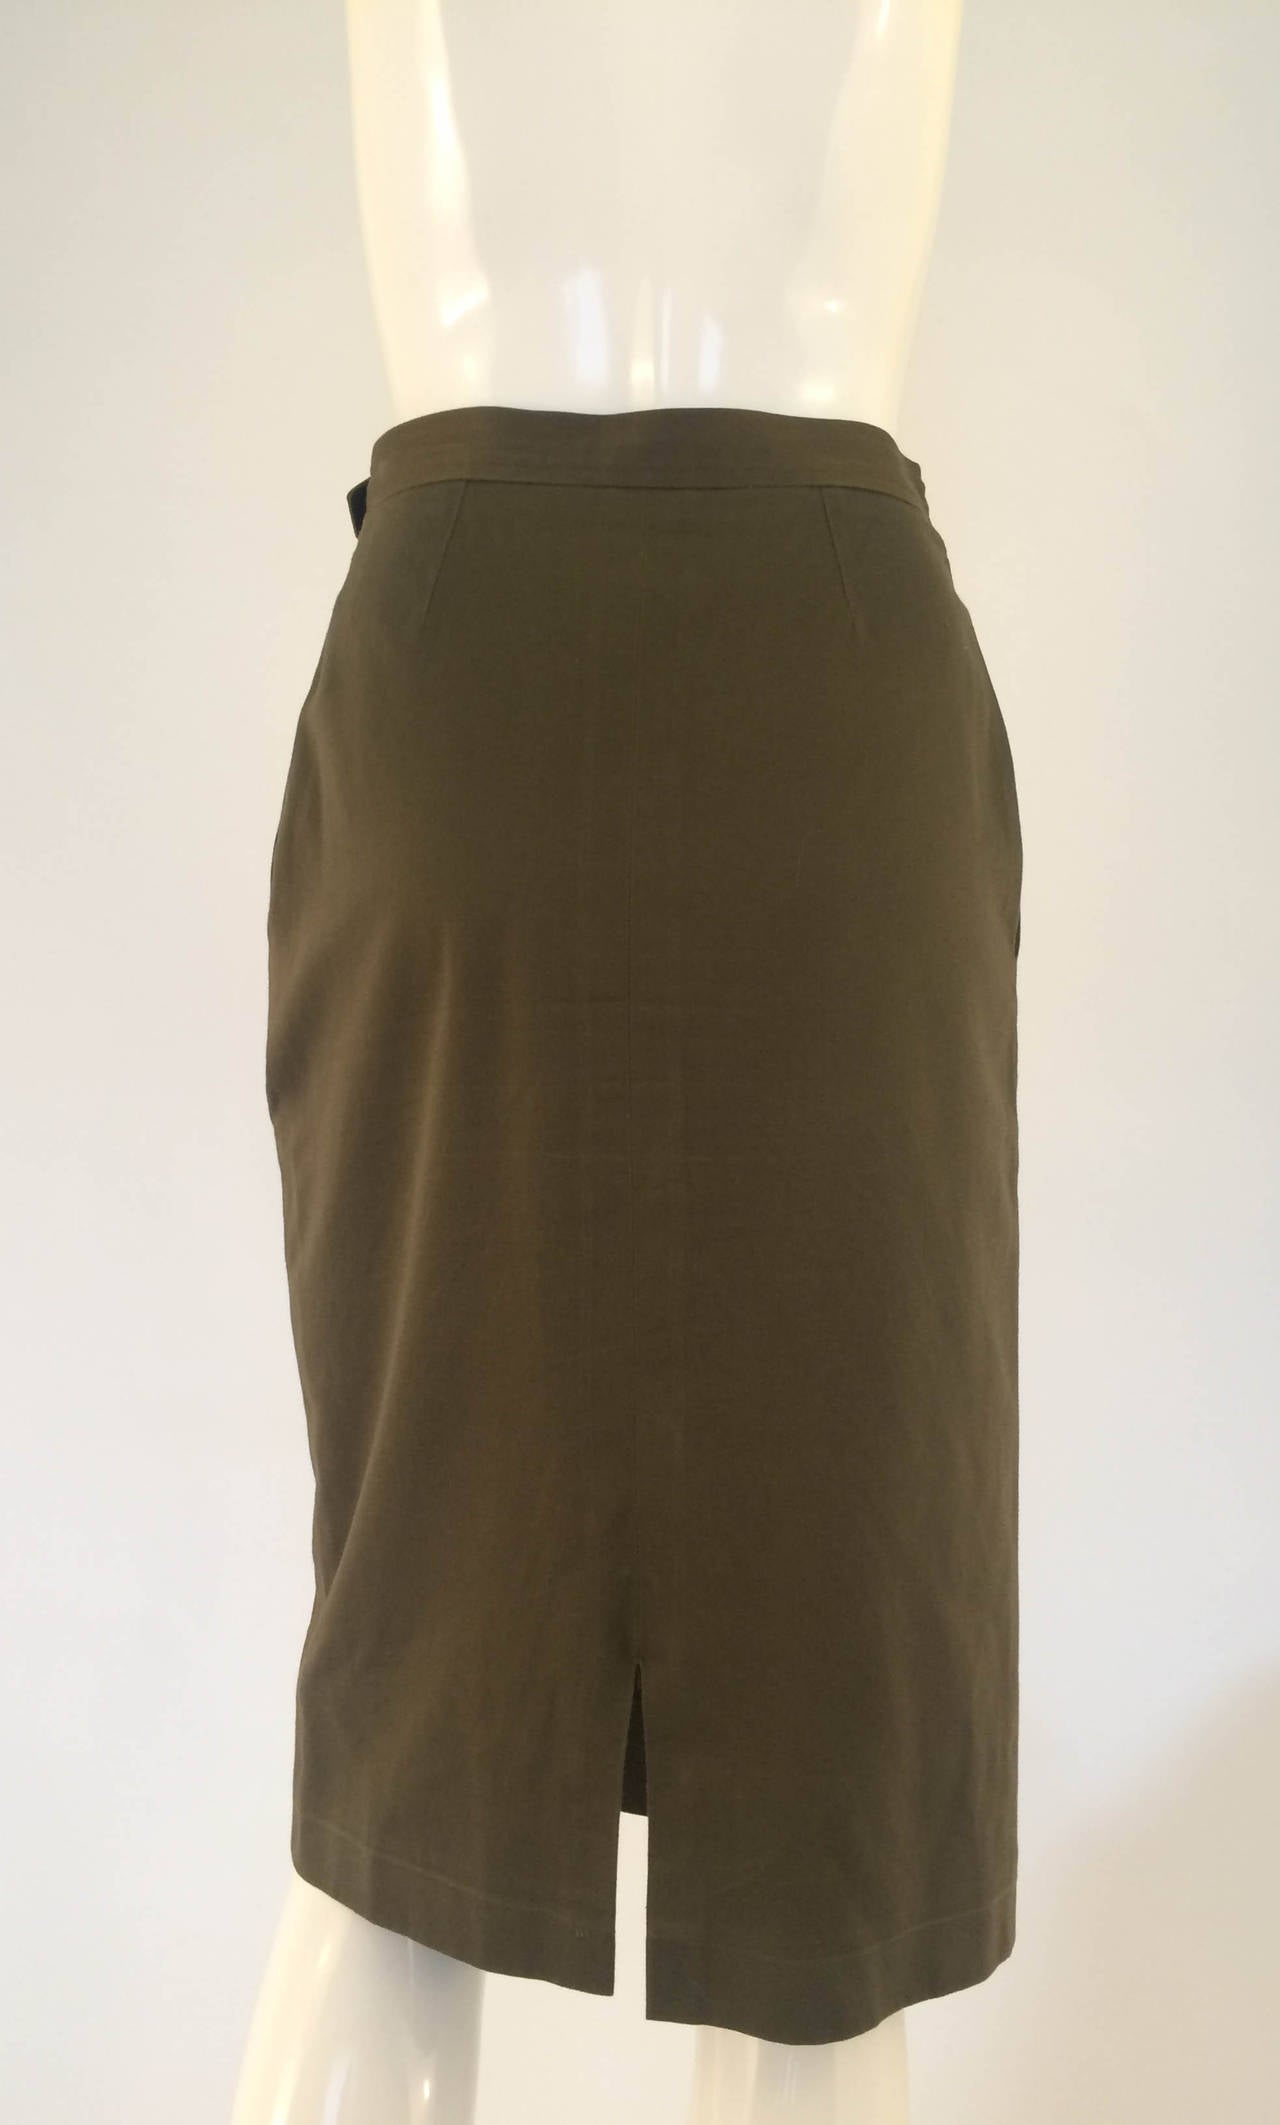 Black Yves Saint Laurent Pencil Skirt - 1980s